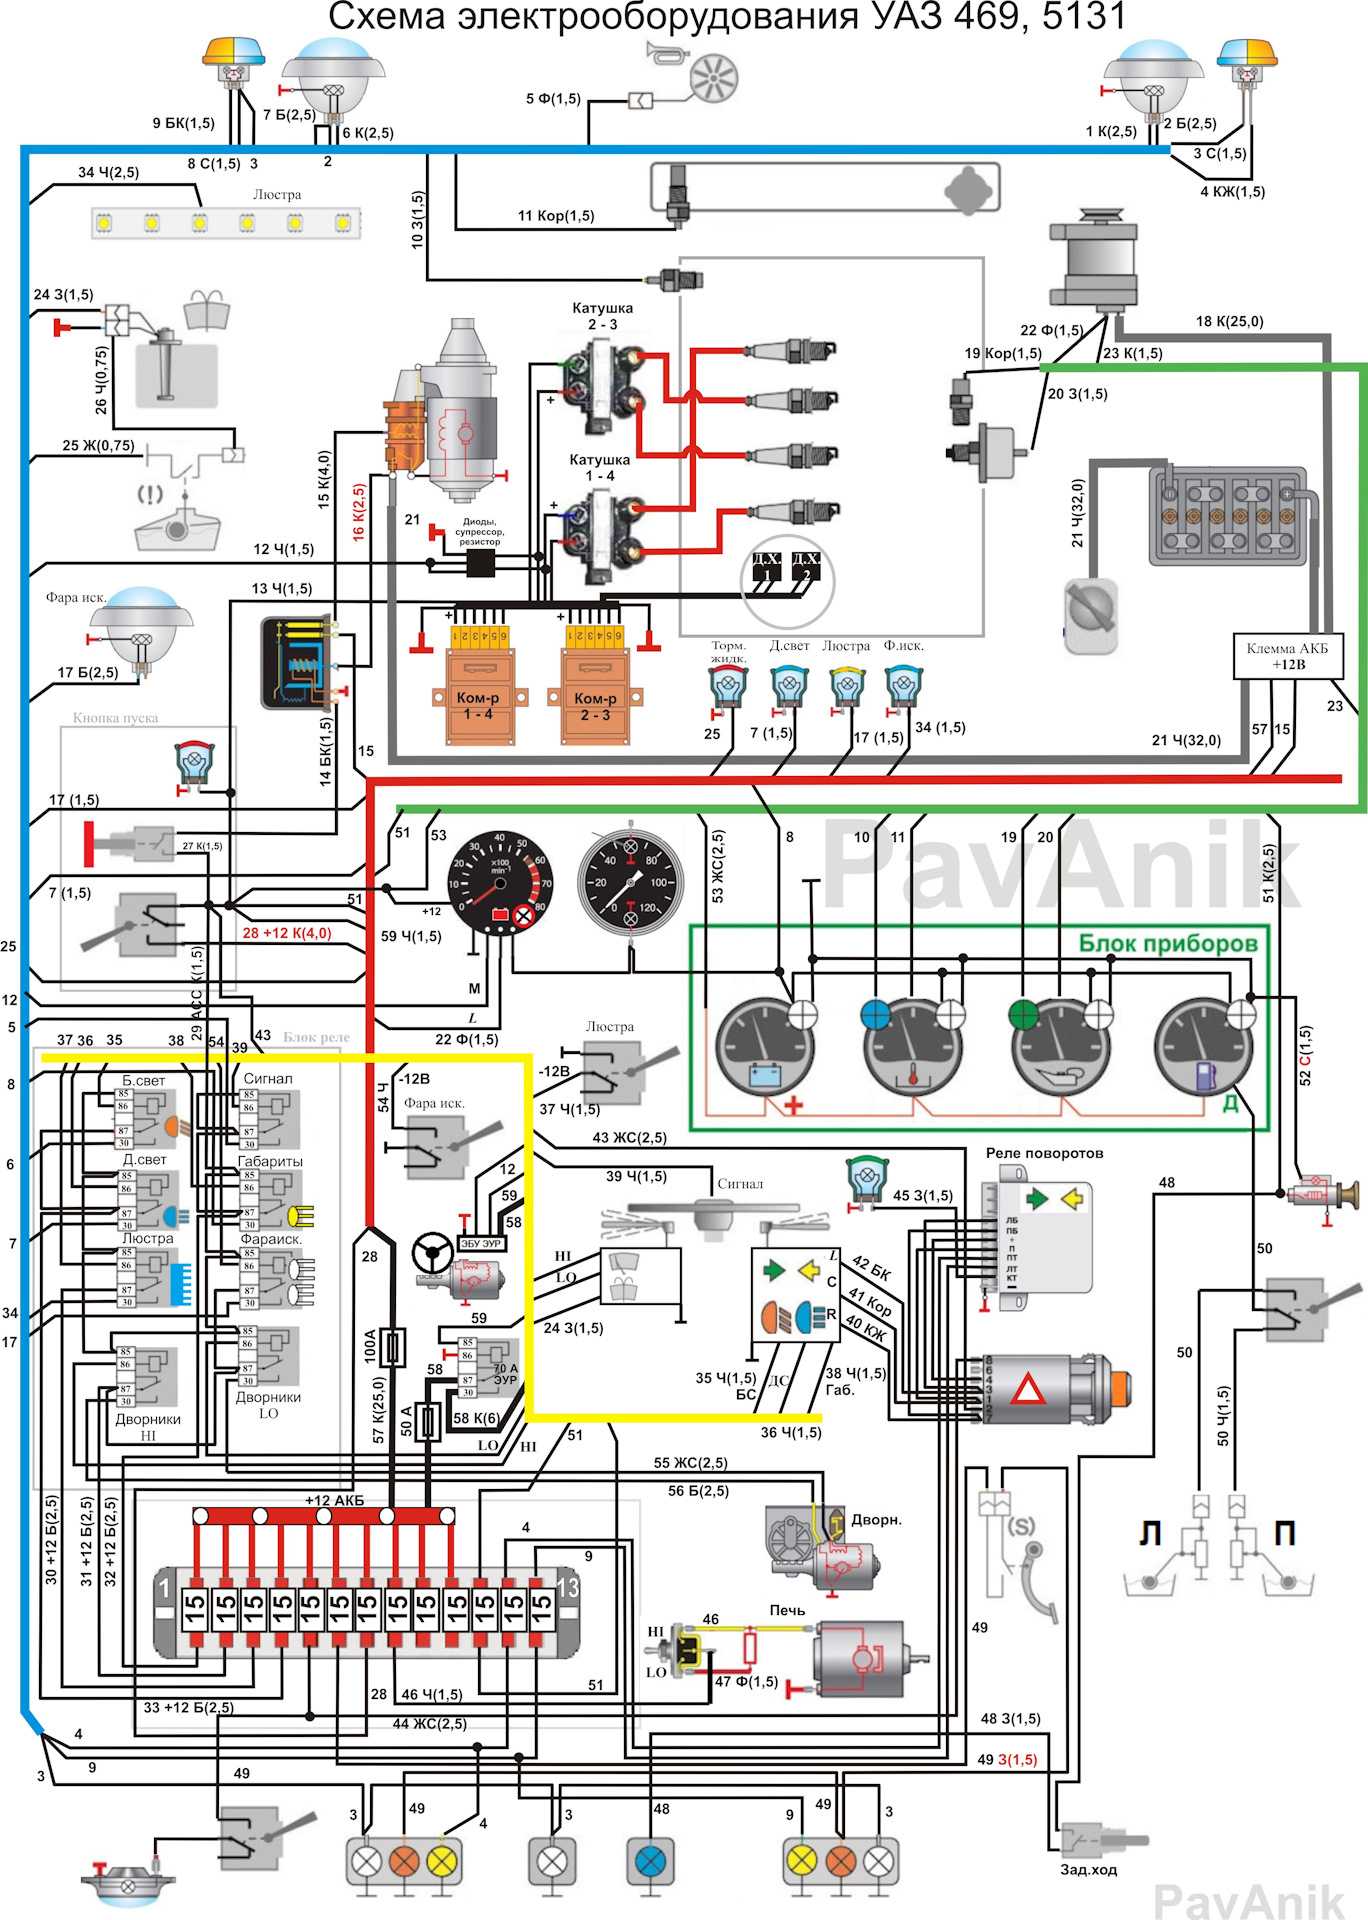 Схема электропроводки уаз хантер (31519), инструкция по замене проводки своими руками, фото и видео